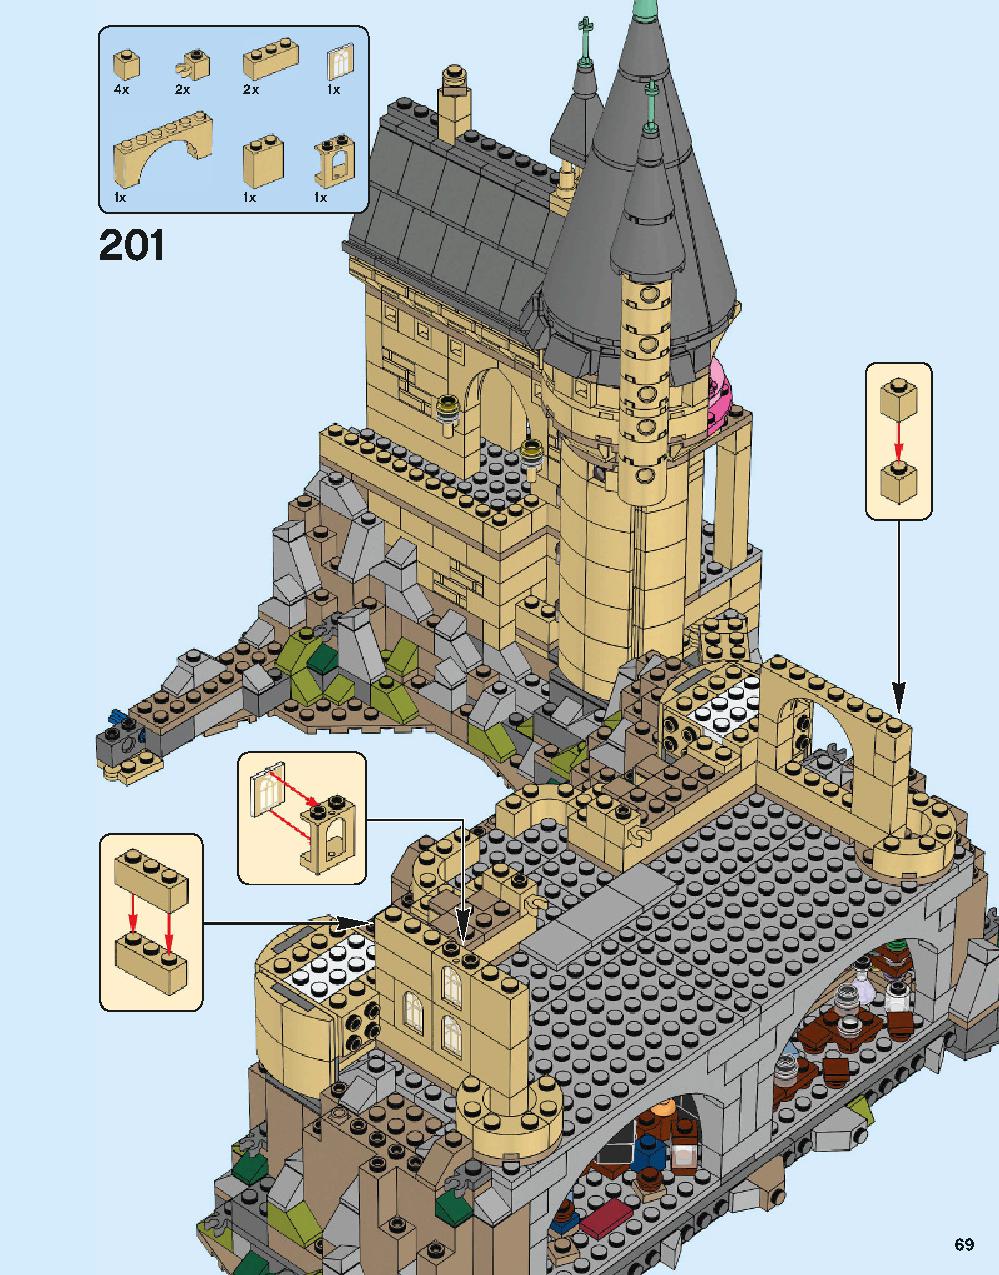 ホグワーツ城 71043 レゴの商品情報 レゴの説明書・組立方法 69 page